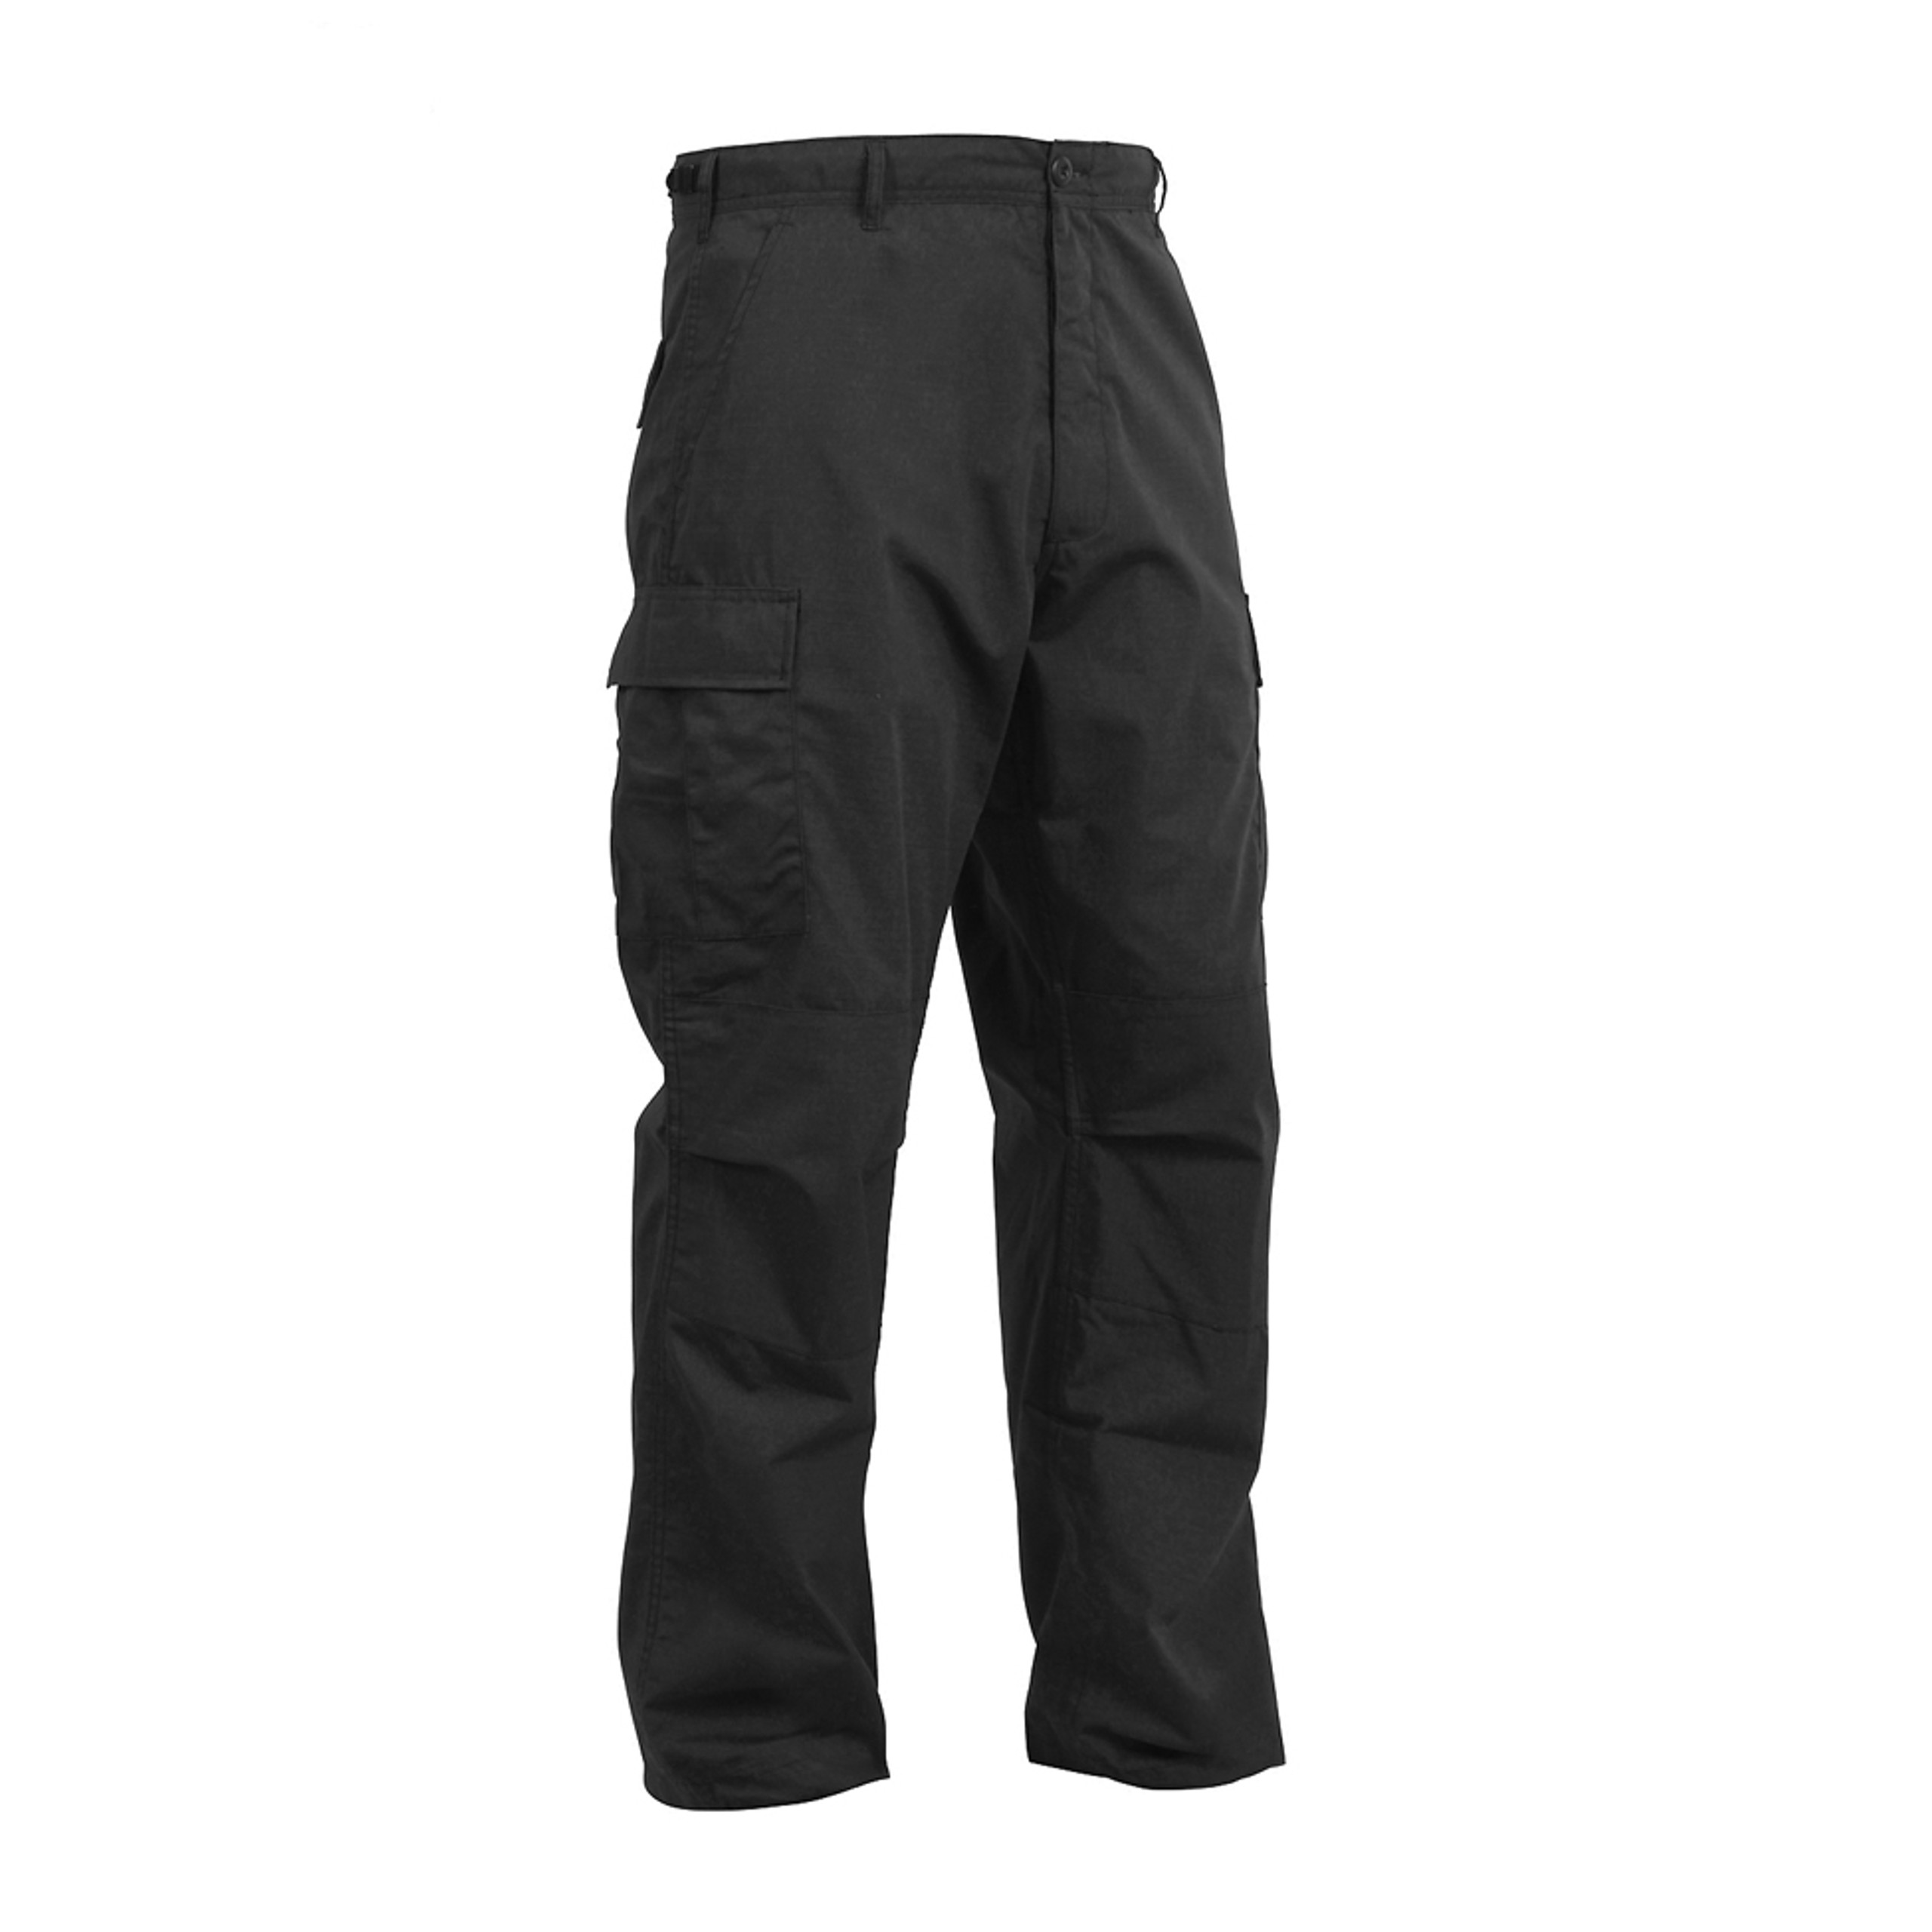 Shop SWAT Cloth Tactical BDU Pants - Fatigues Army Navy